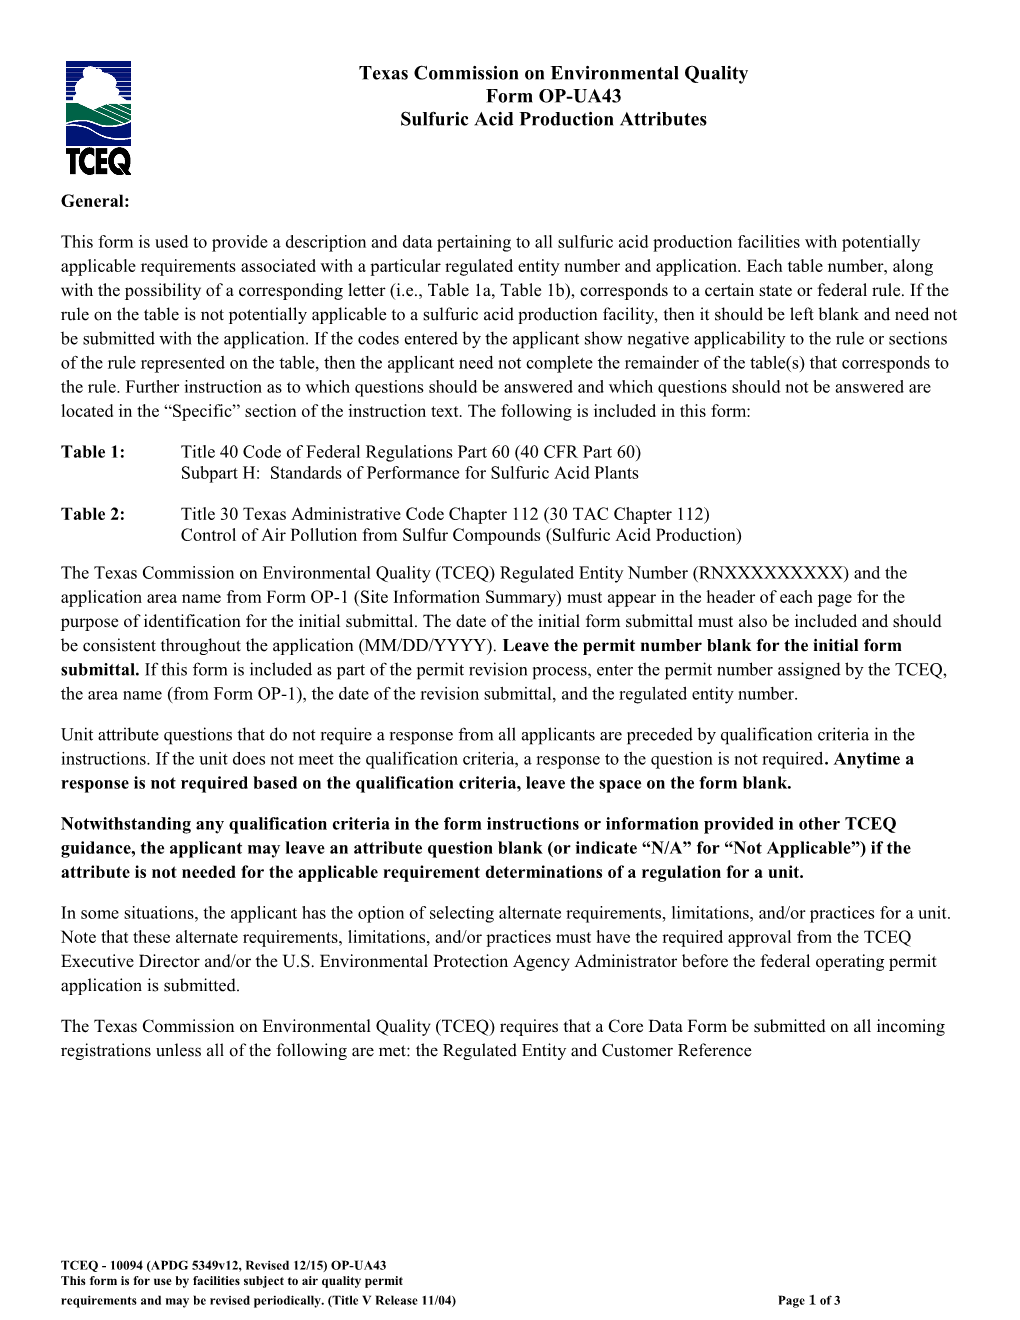 TCEQ Form OP-UA43 Sulfuric Acid Production Attributes